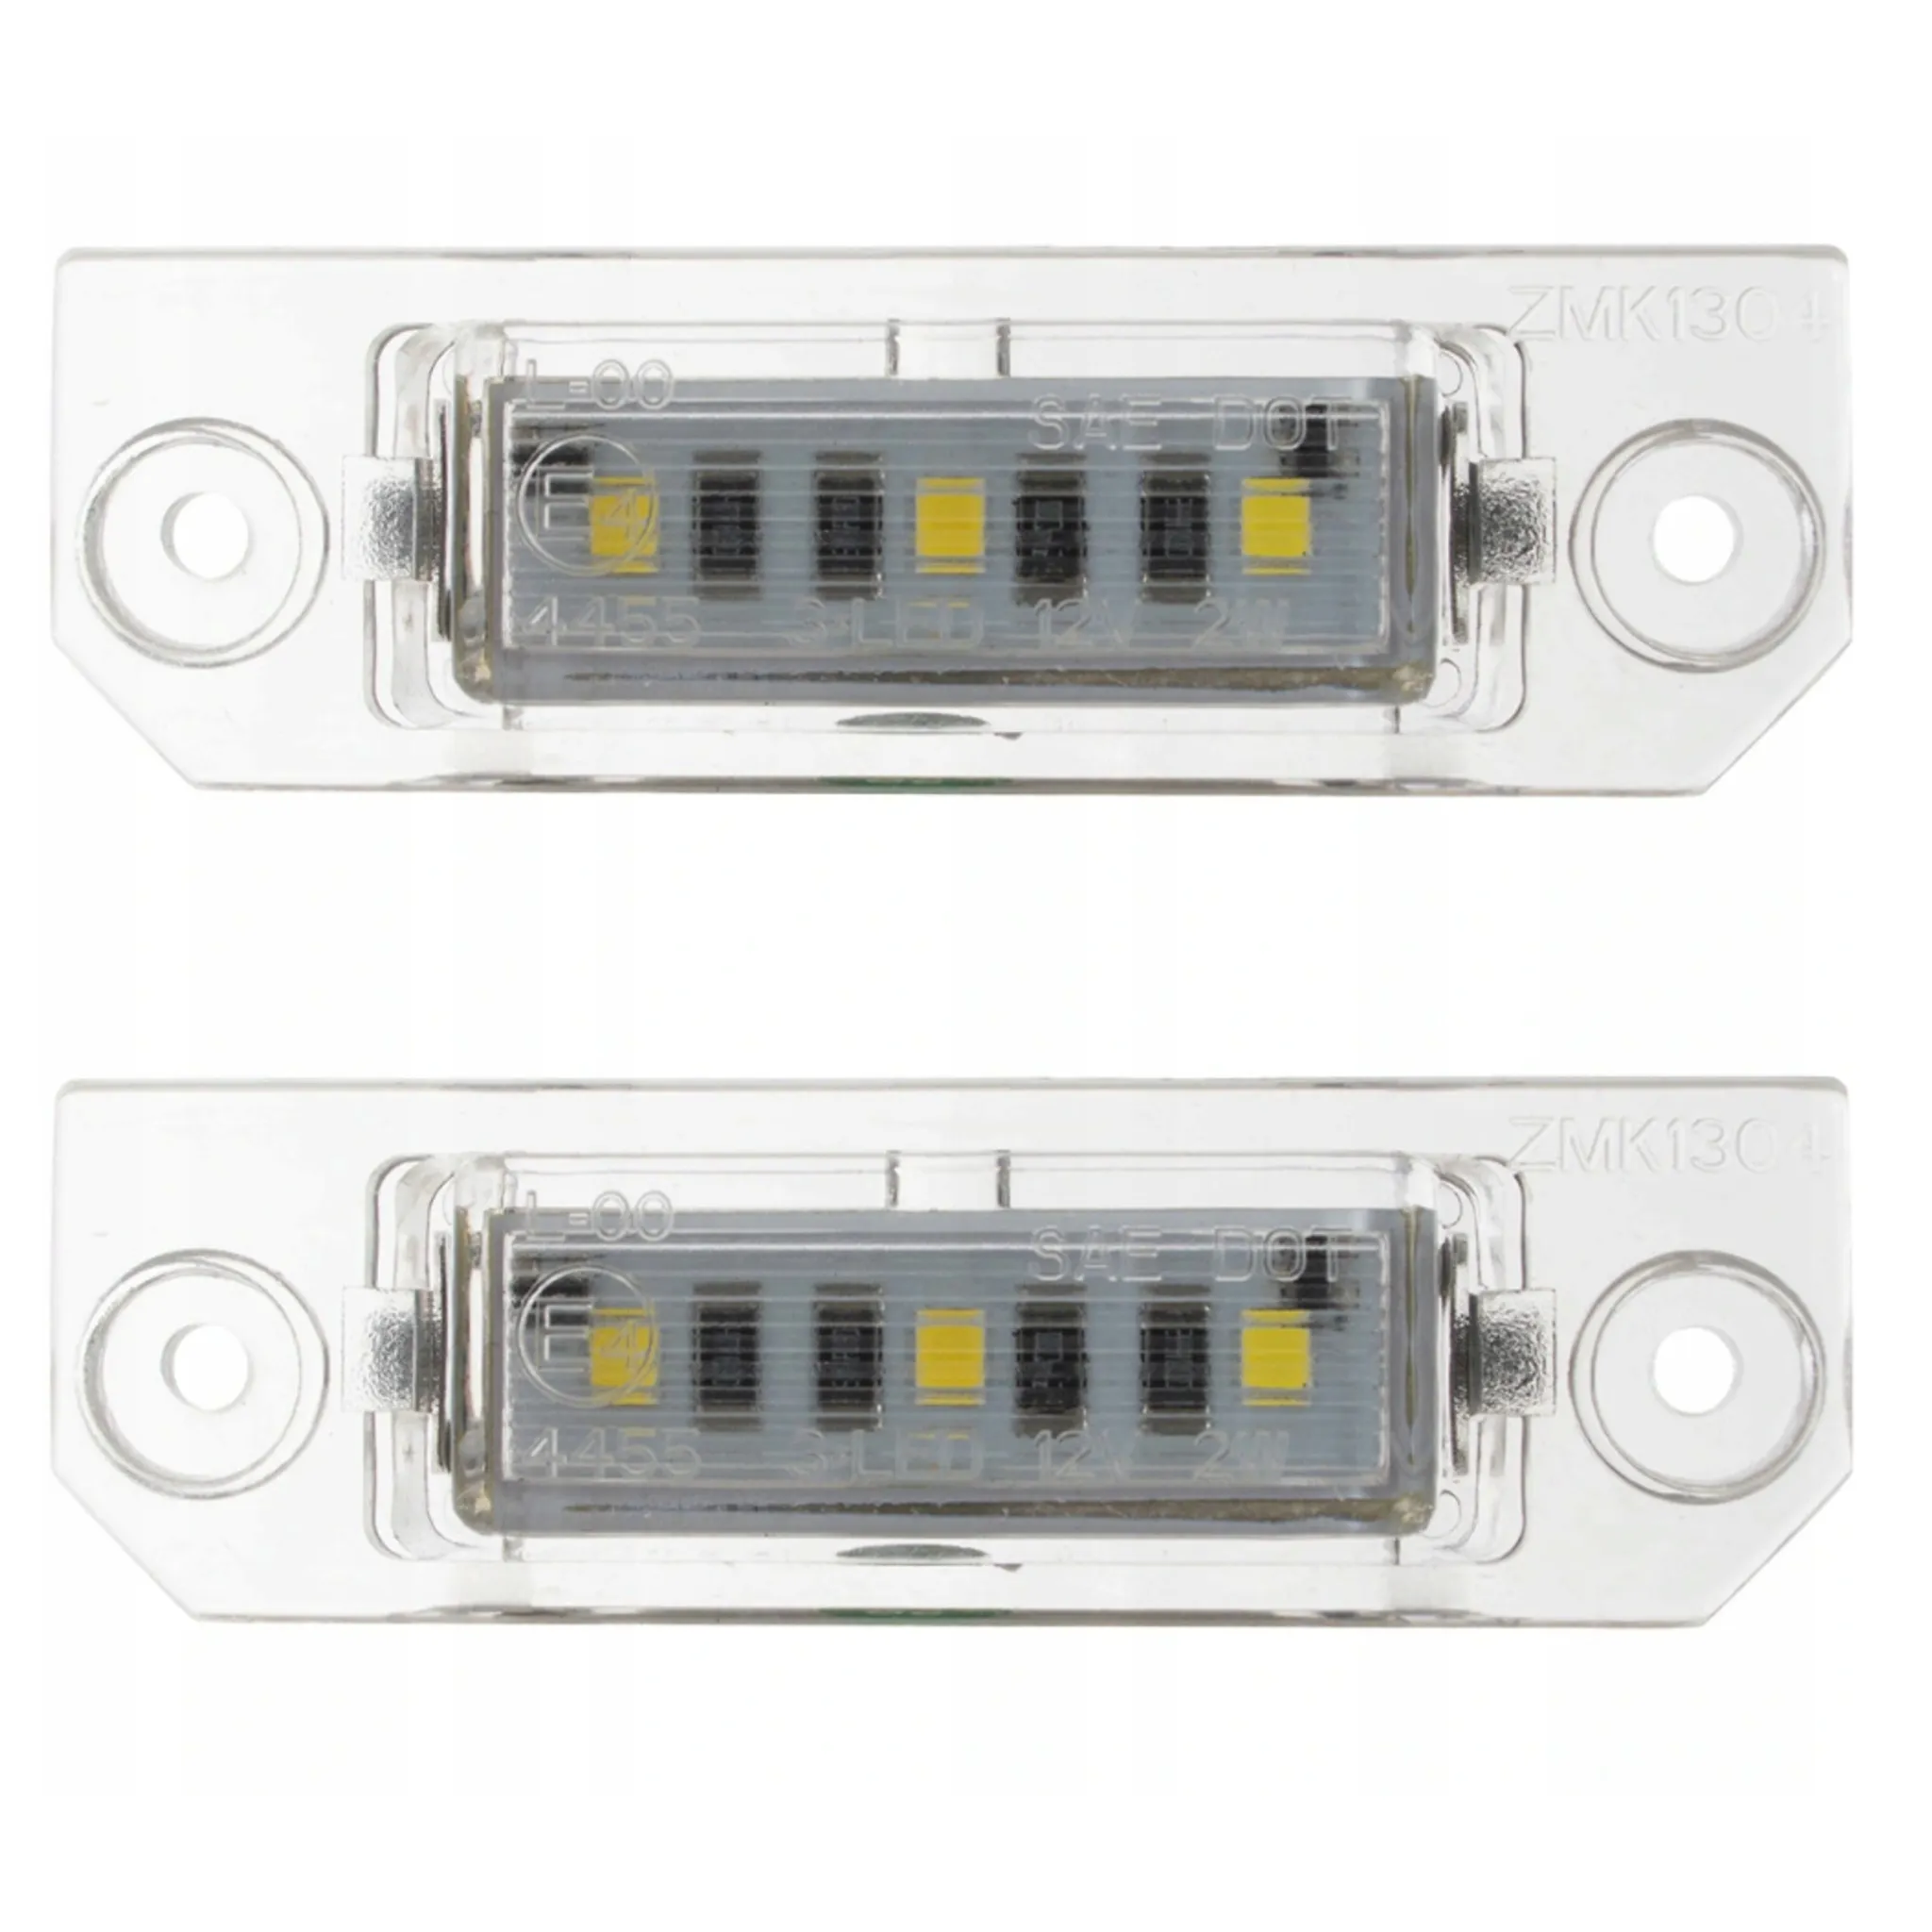 Kennzeichenbeleuchtung LED passend für VW Golf5, Caddy3, Passat